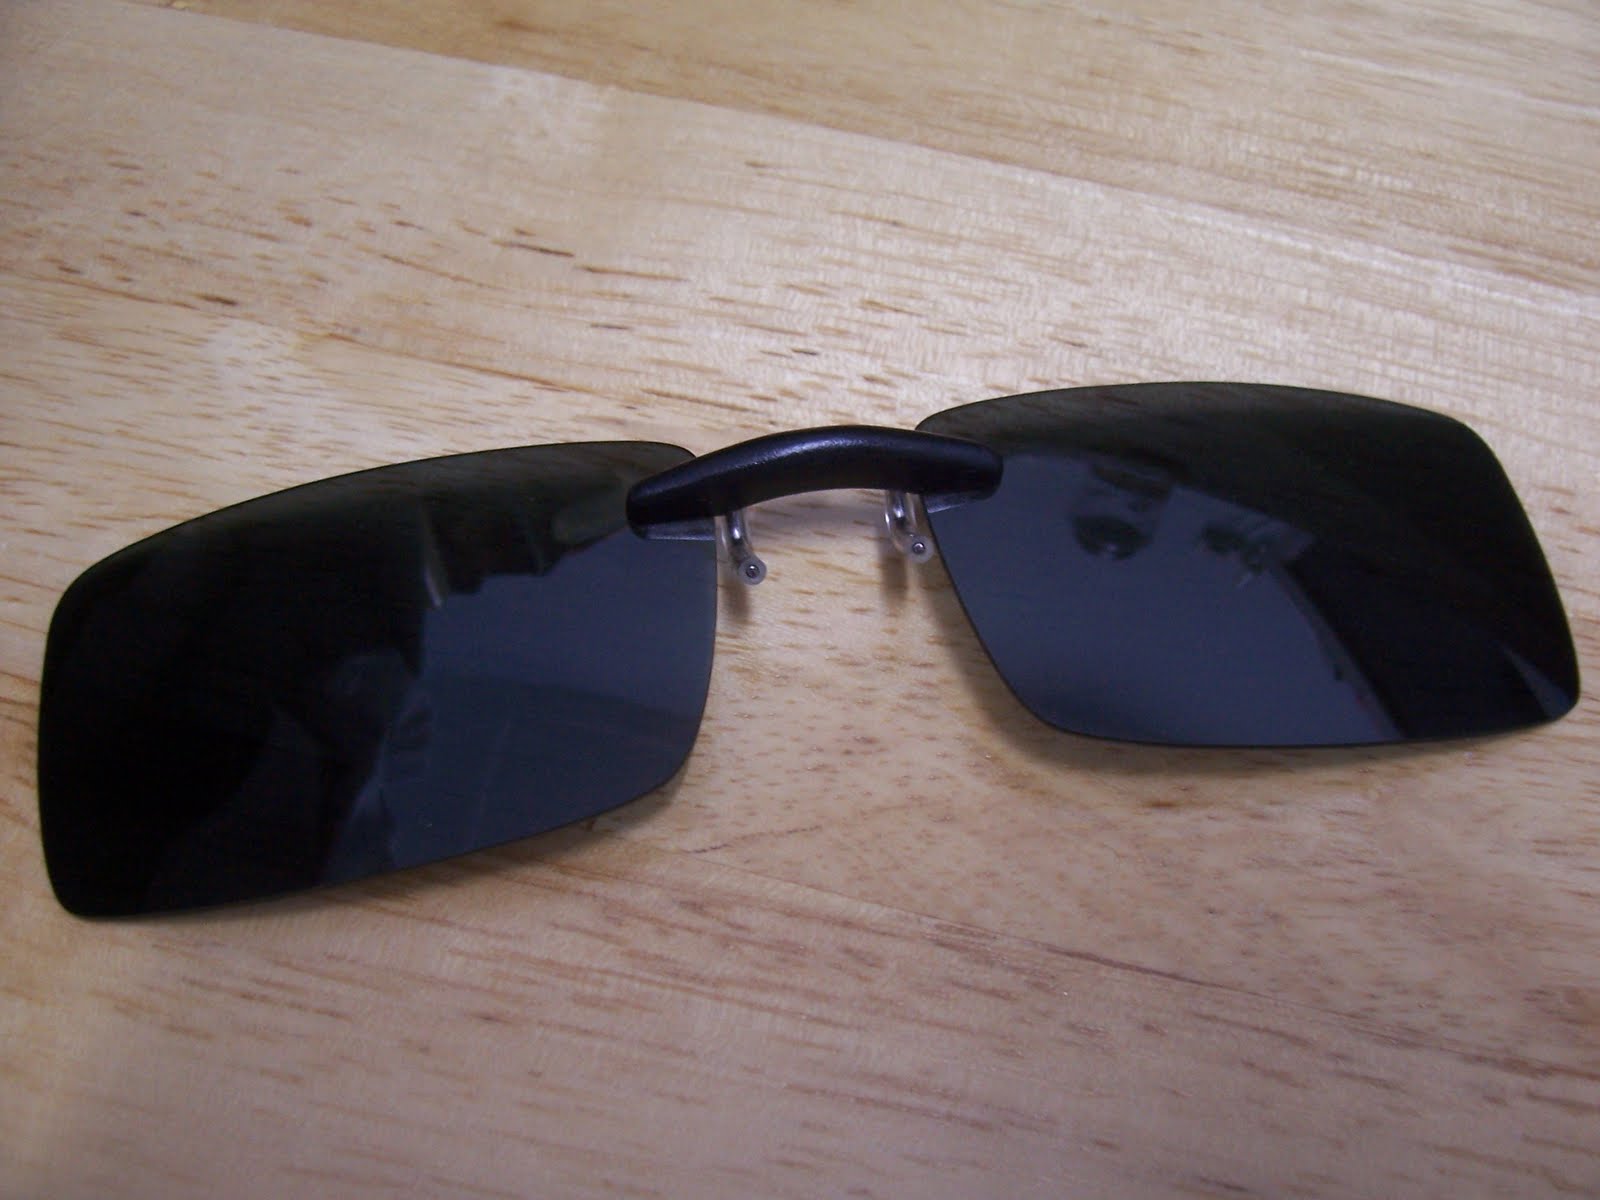 V!Nni3: Sunglasses